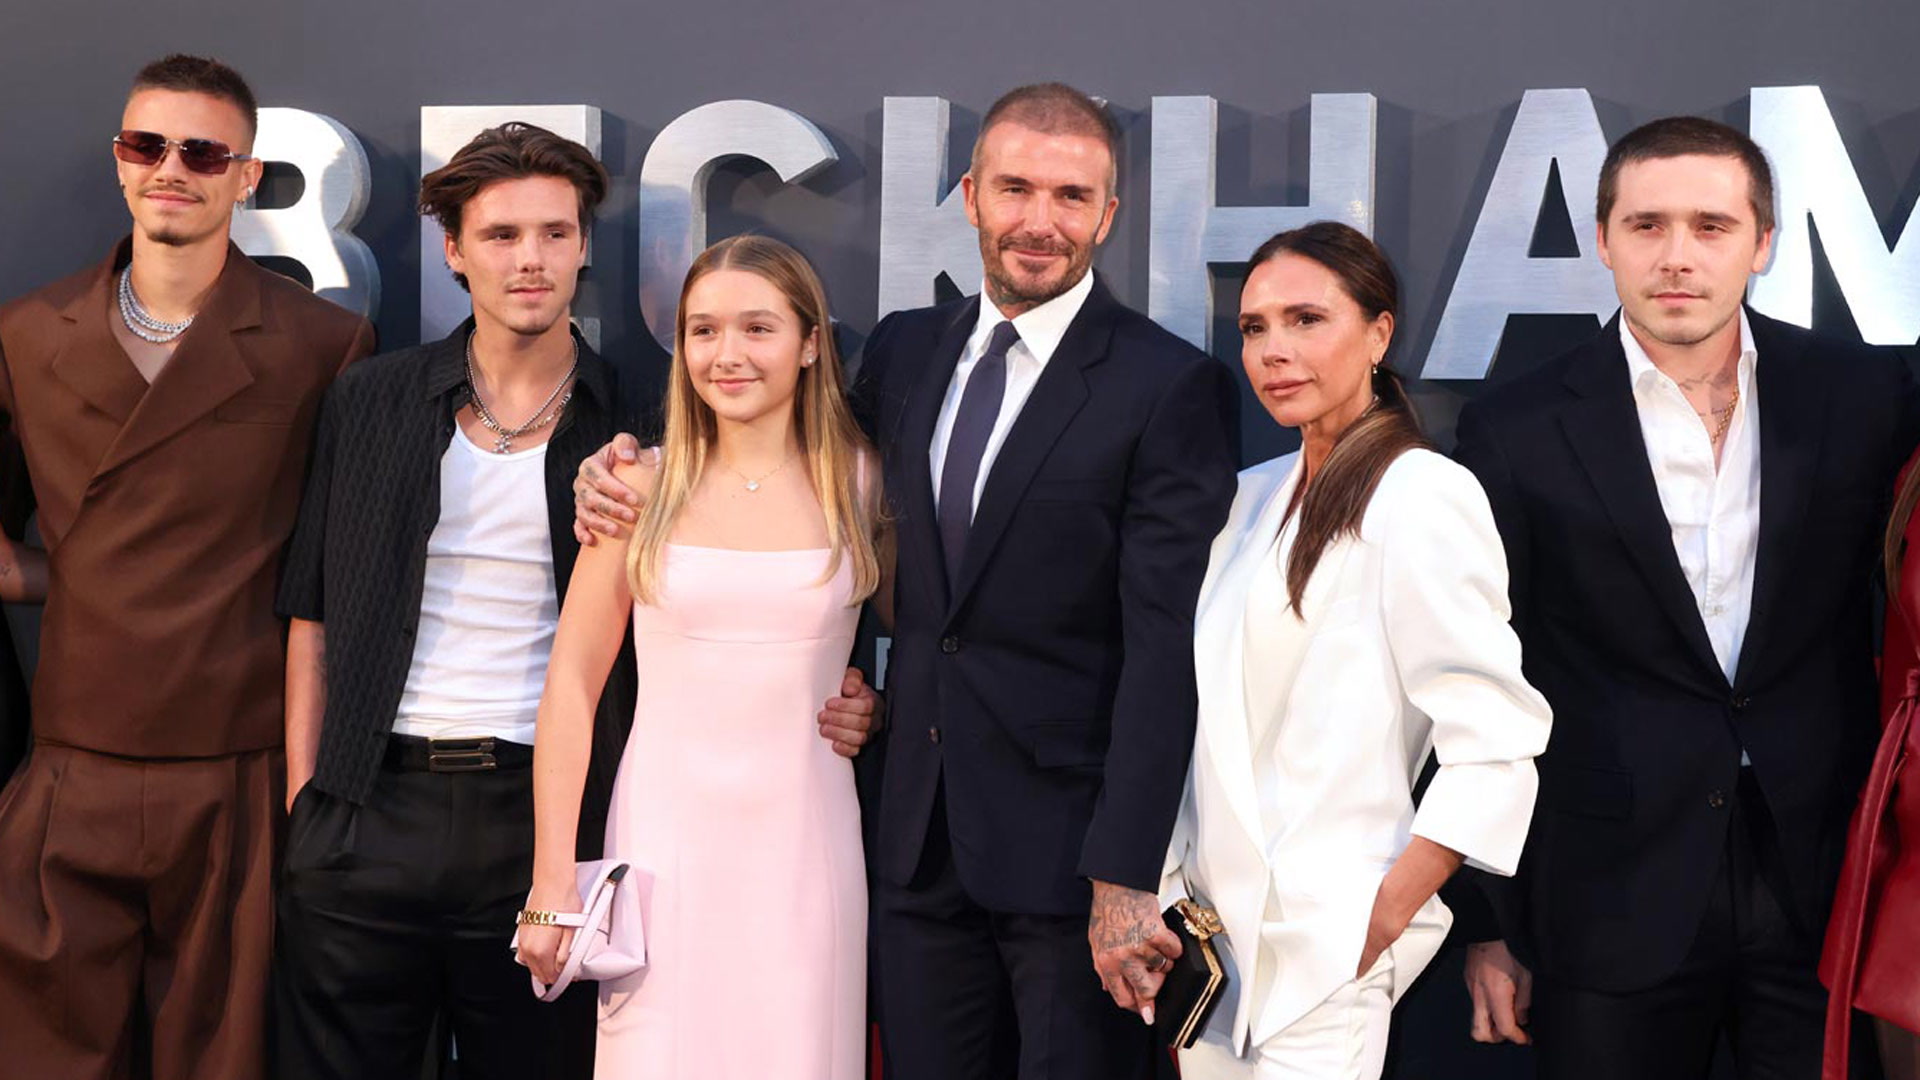 Los hermanos Beckham: herederos del estilo y el talento de sus padres